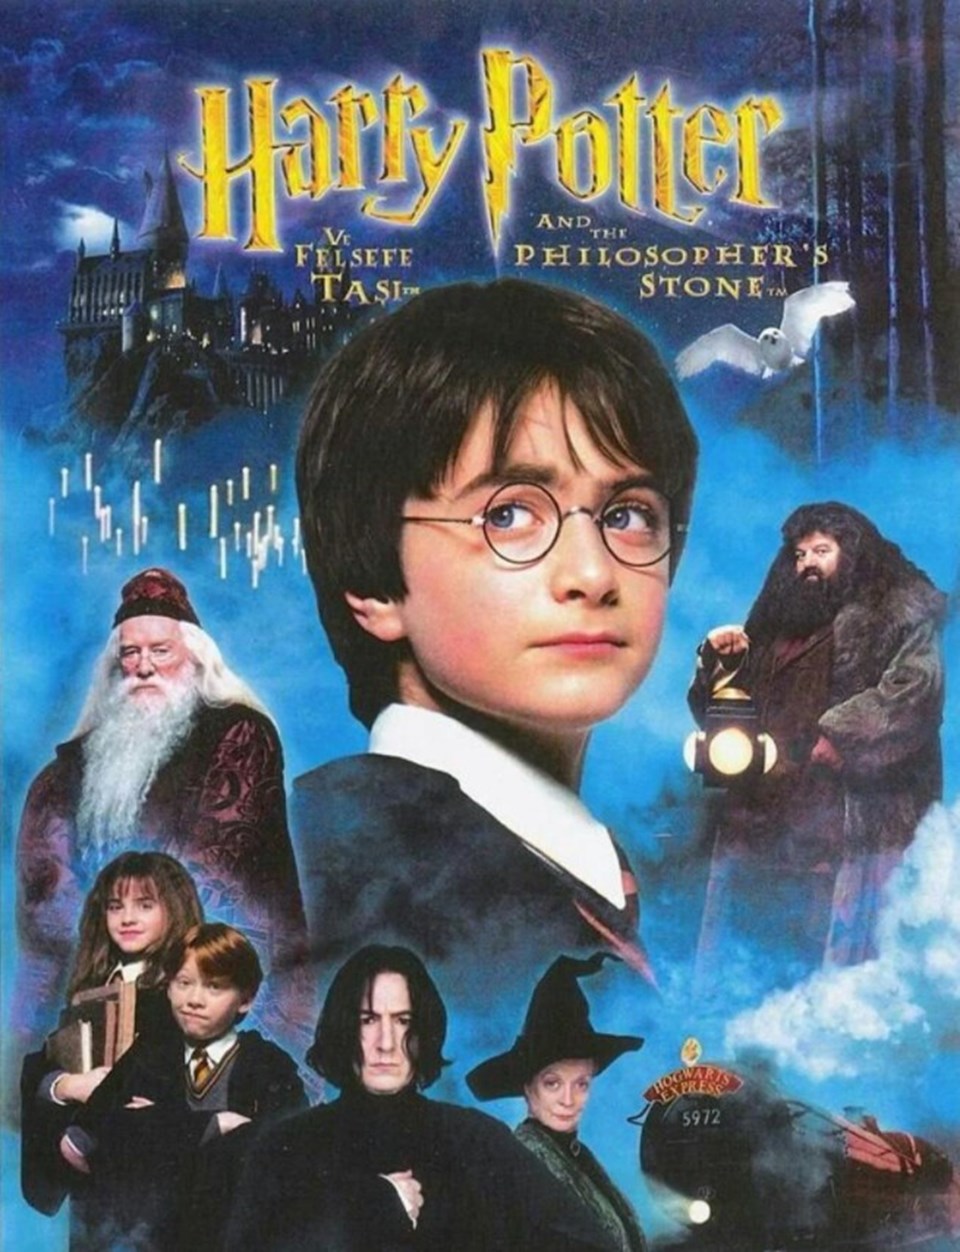 Harry Potter isimli kişi, ilk baskı Felsefe Taşı kitabını satışa çıkardı: 355 bin TL - 2